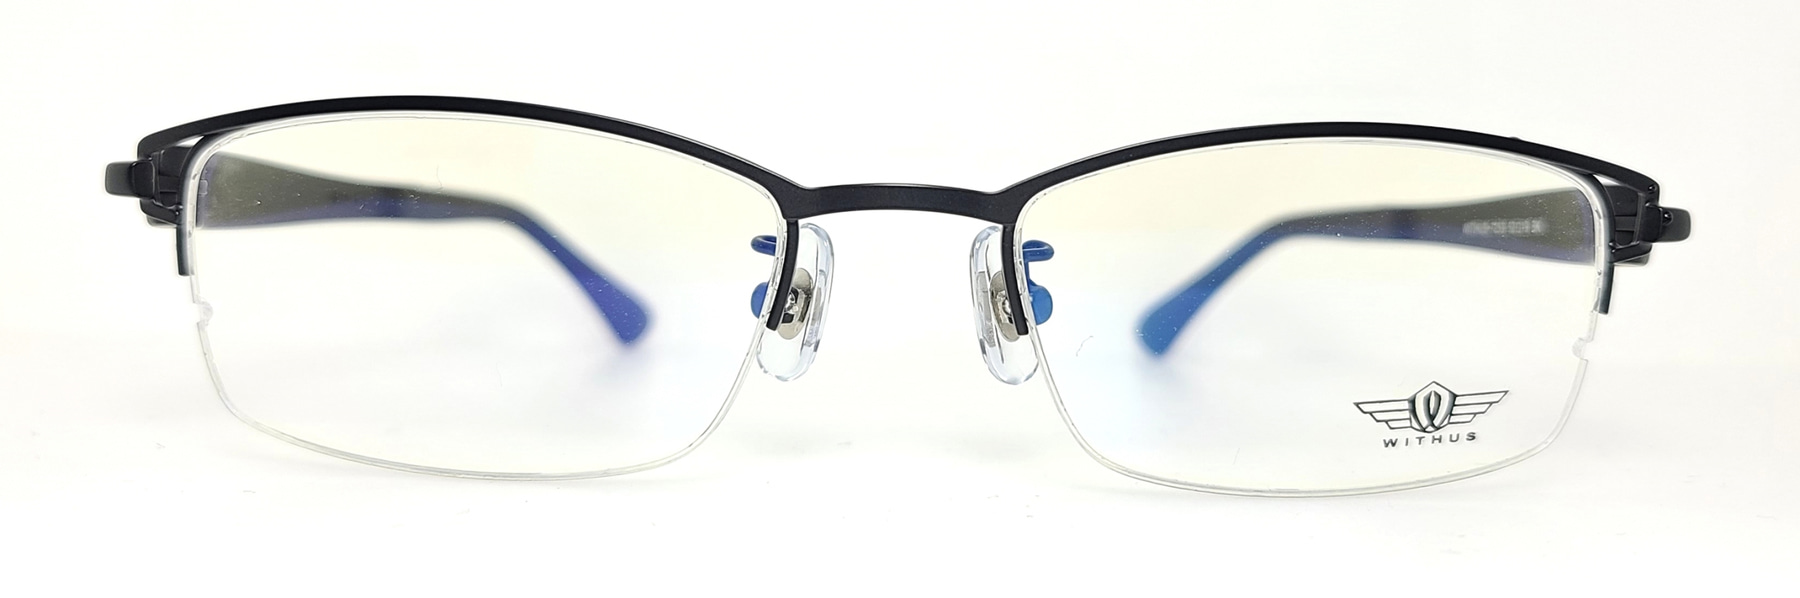 WITHUS-7253, Korean glasses, sunglasses, eyeglasses, glasses